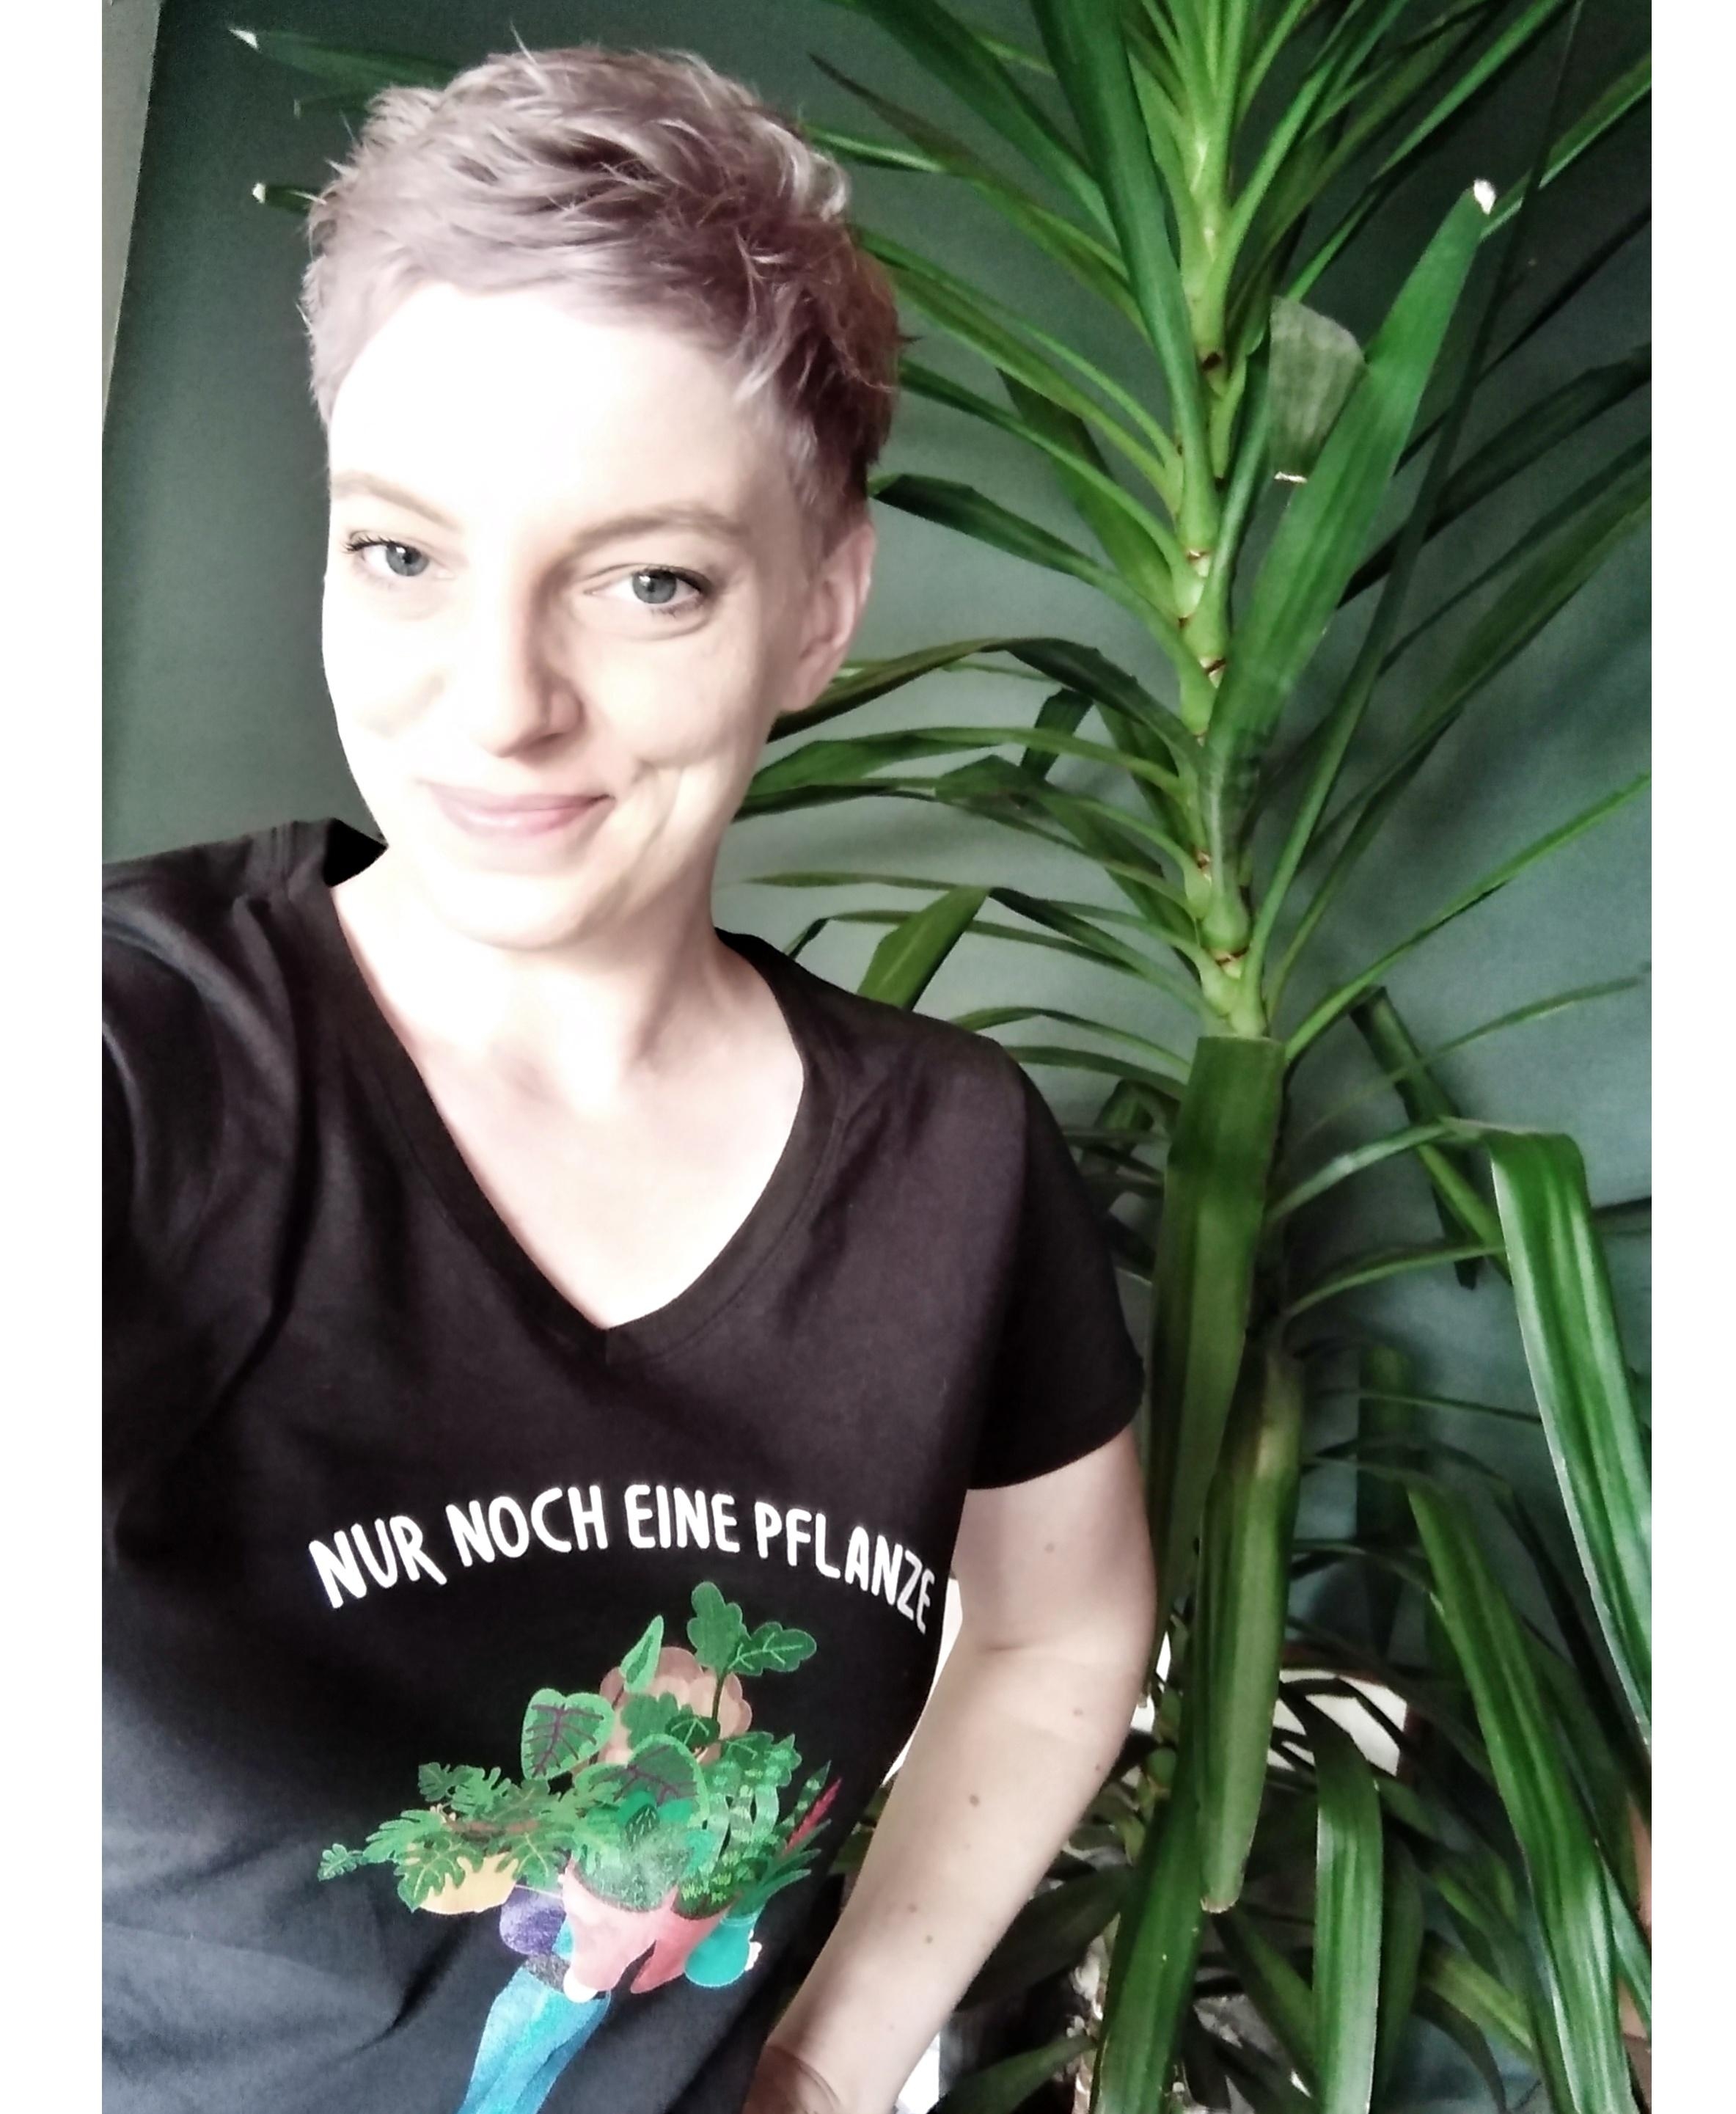 "Nur noch eine Pflanze", funktioniert irgendwie nie... #fashionbeautychallenge #lieblingslook #plants #pflanzenlieb